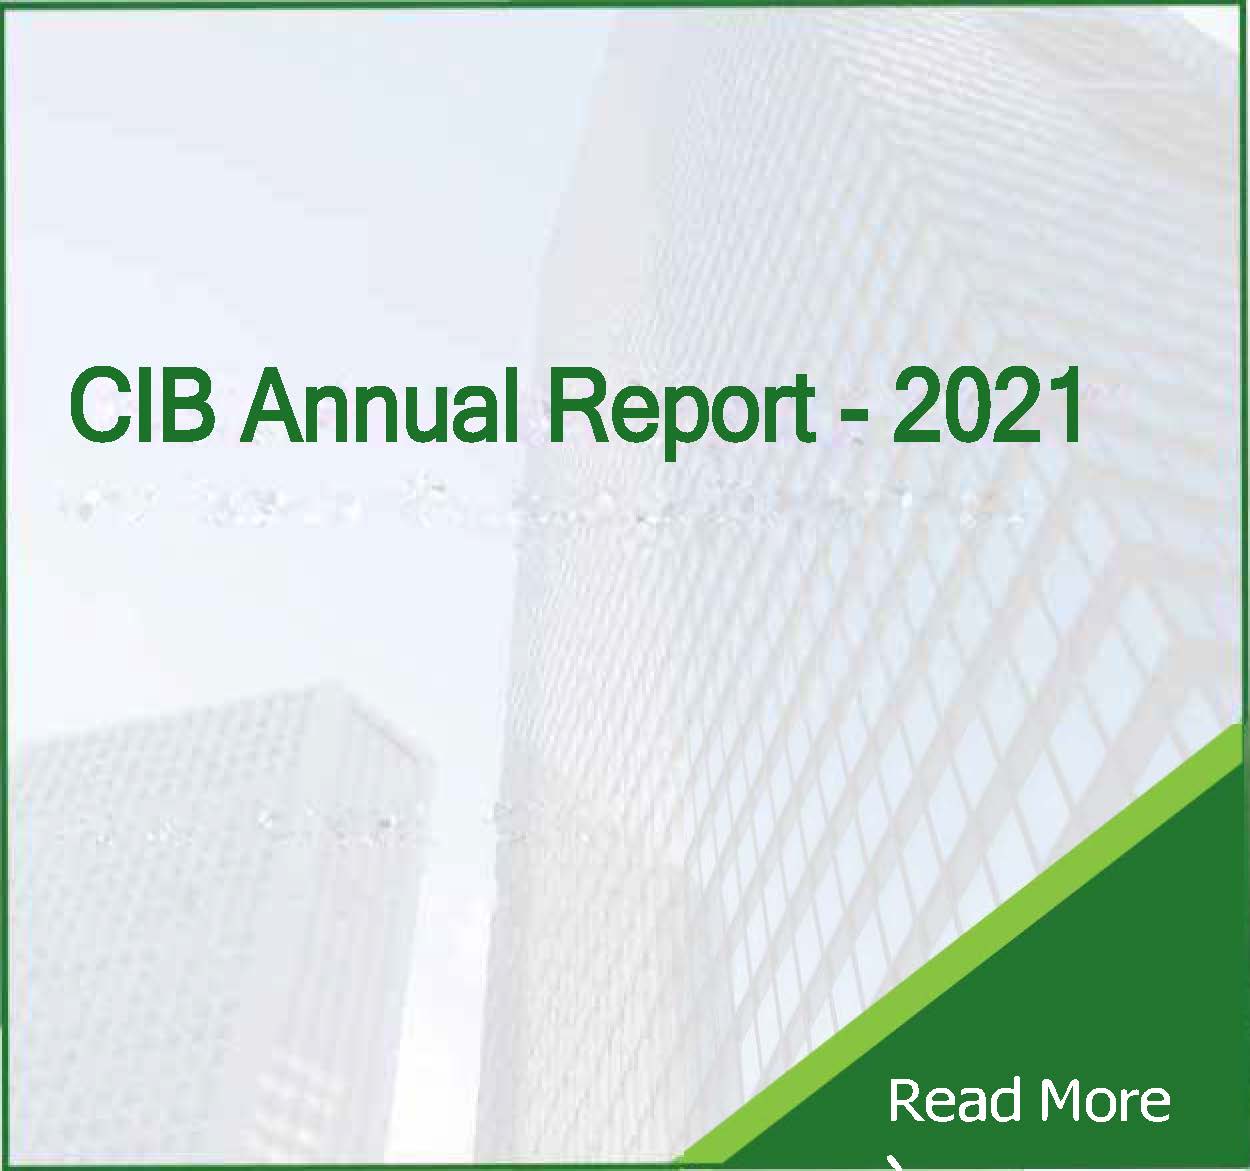 CIB Annual Report 2021 - CIB